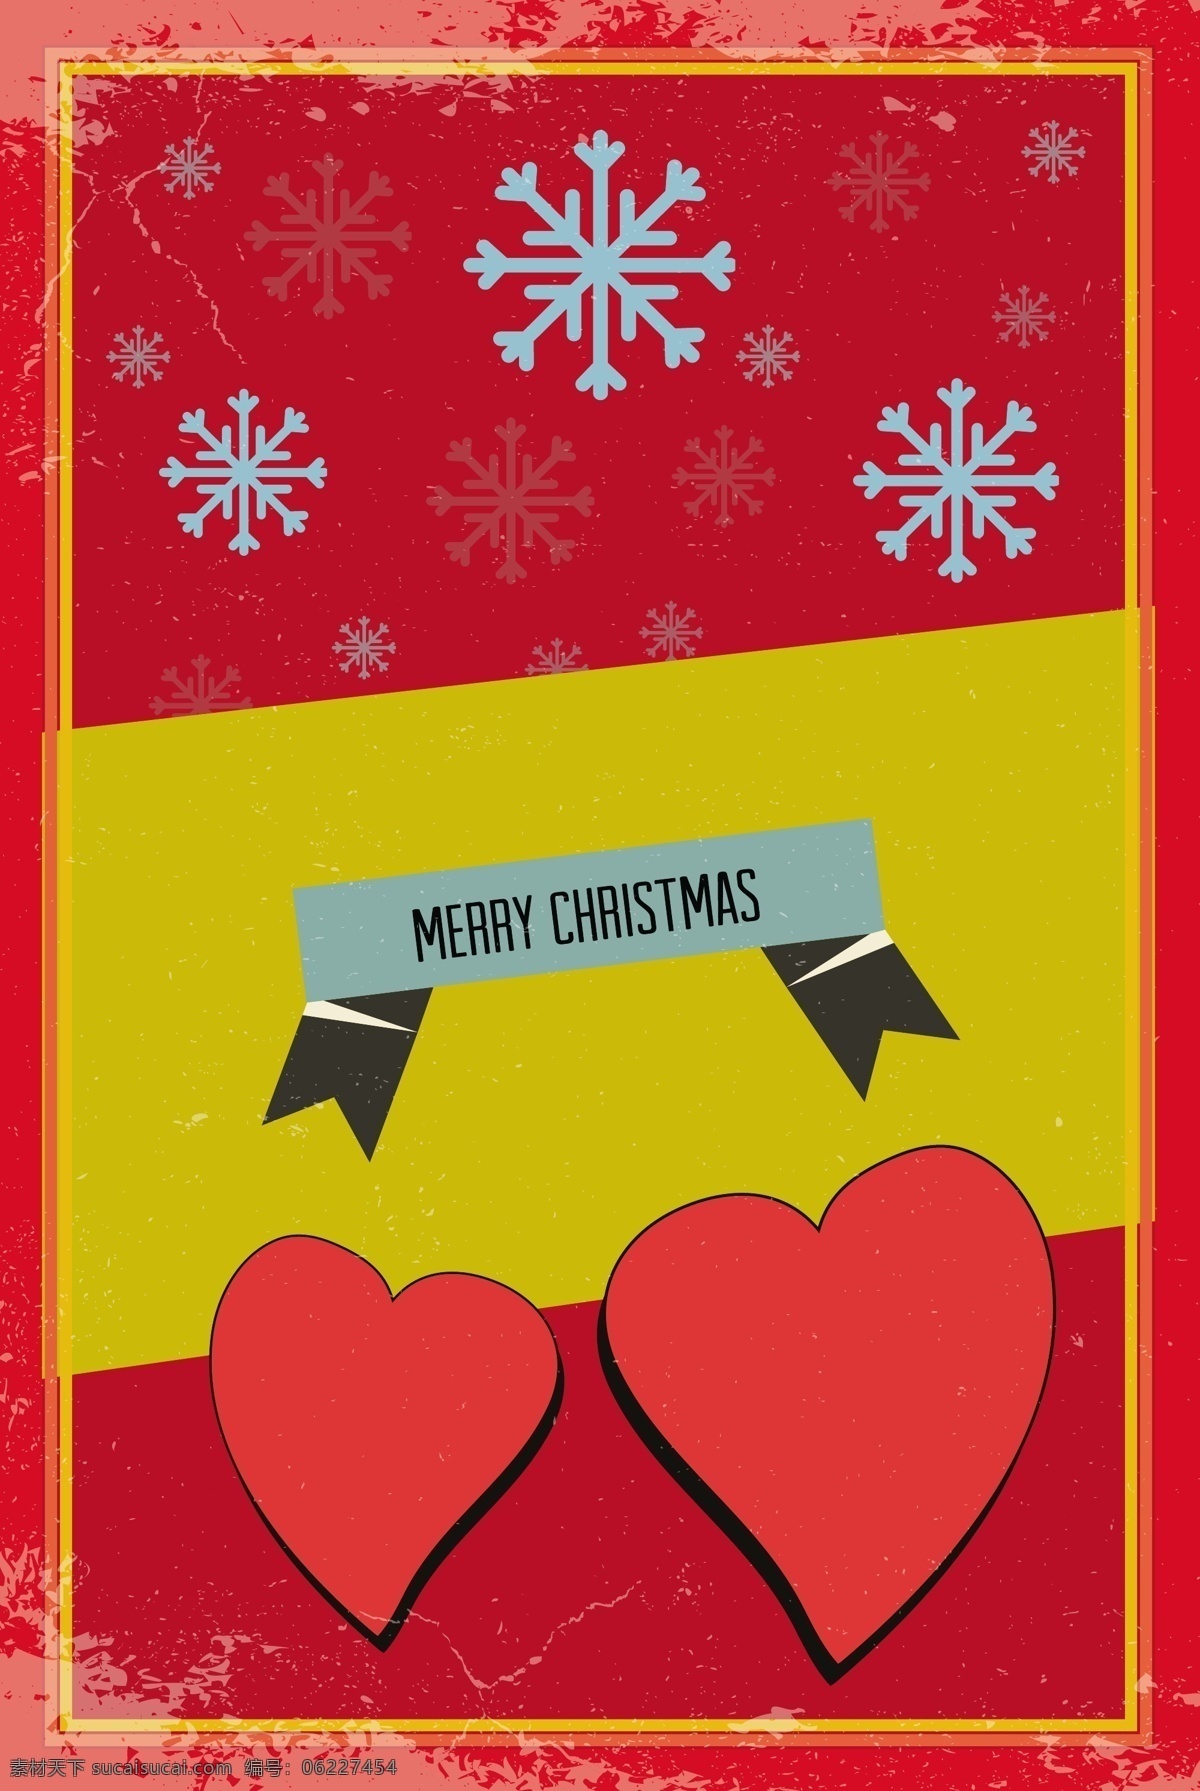 圣诞插画素材 圣诞快乐 圣诞 节日素材 新年 新年快乐 海报 广告 插画 圣诞节 矢量素材 爱心 心 雪花